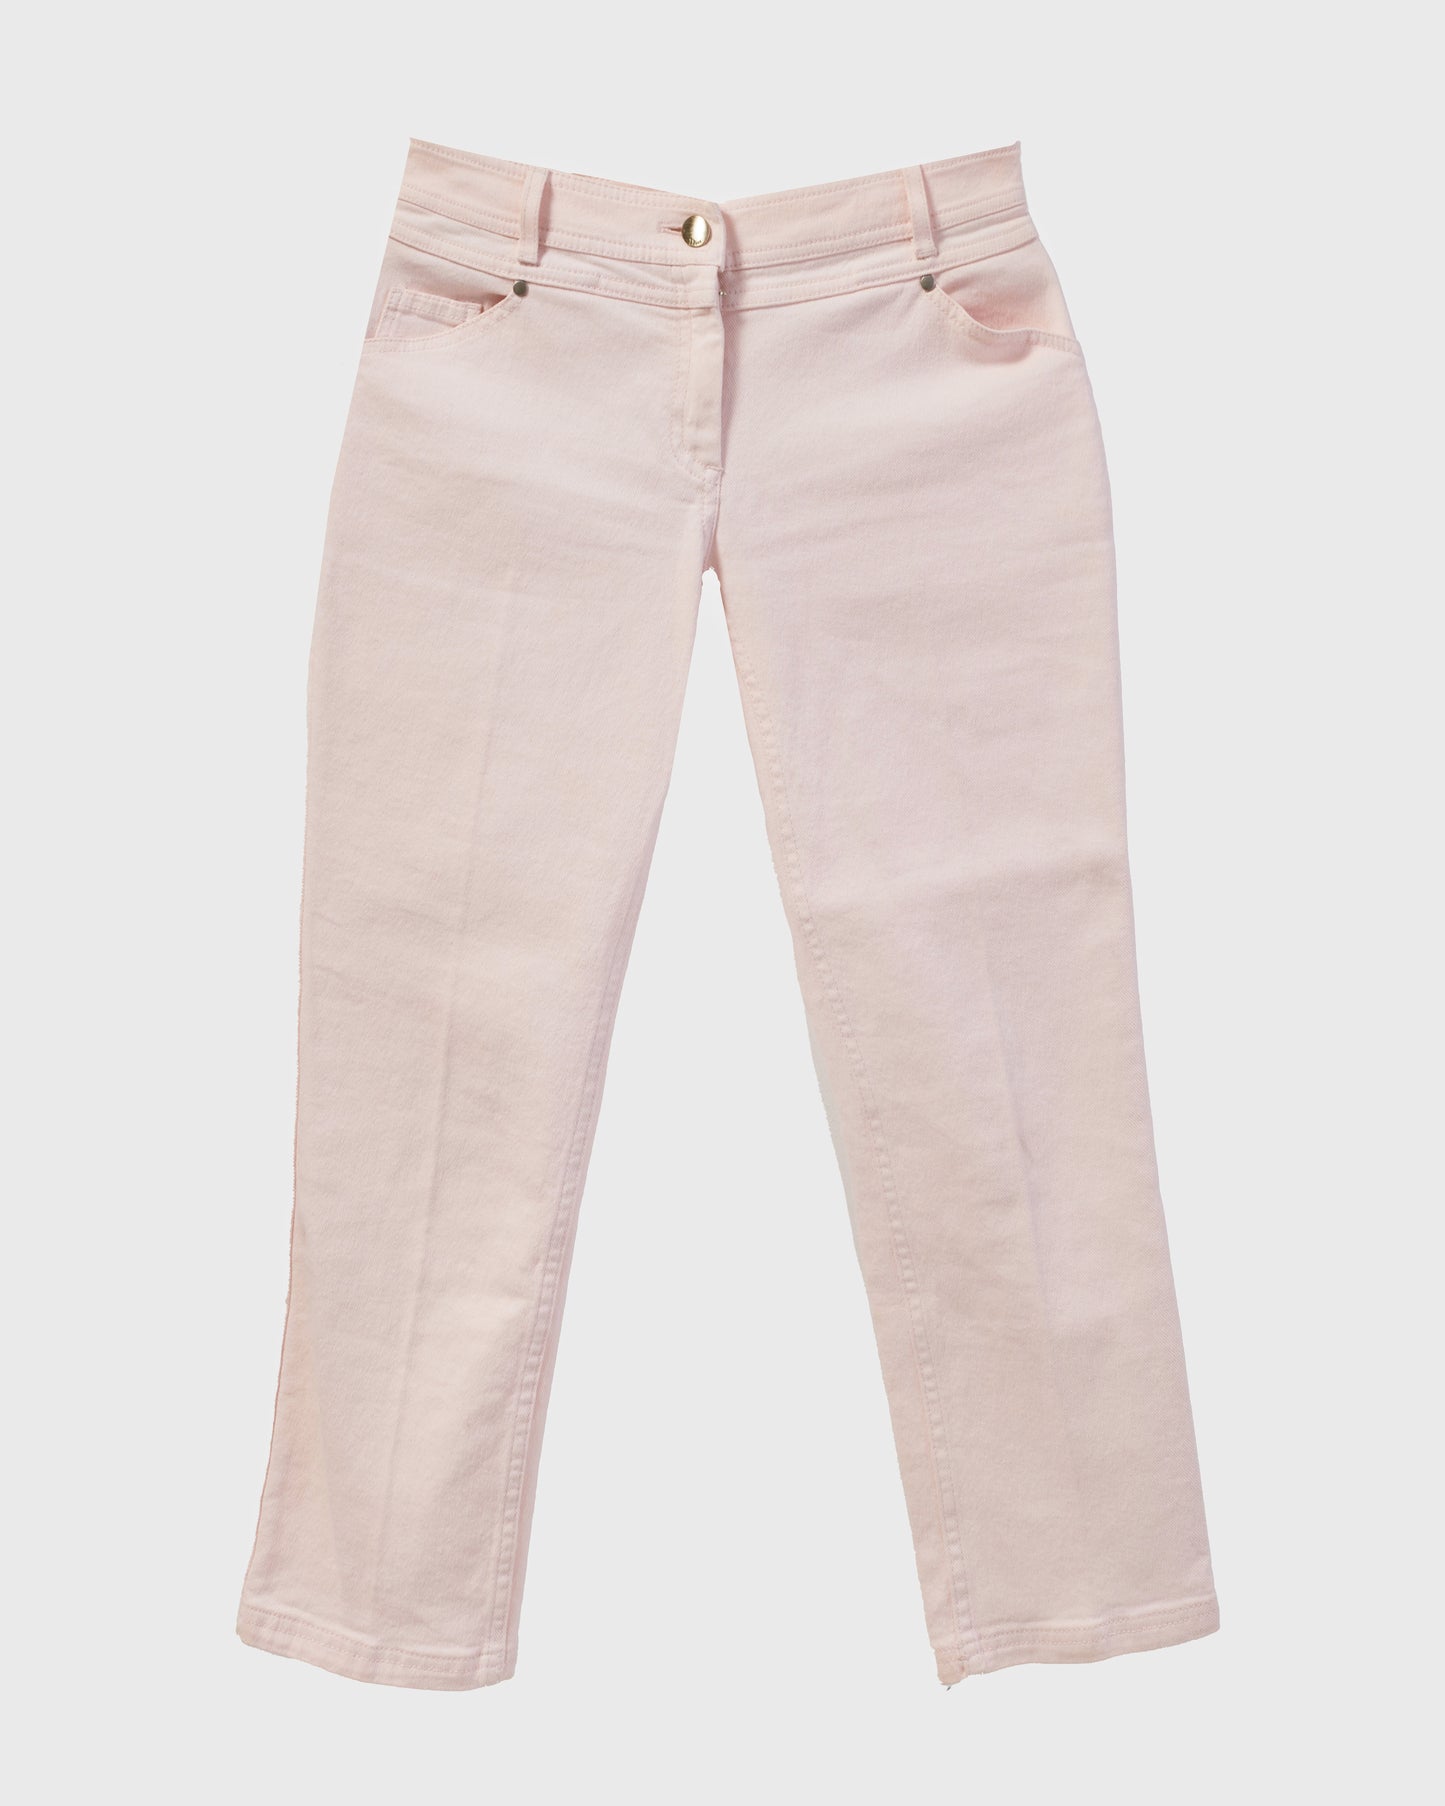 Dior Vintage Pink Denim Jacket and Cropped Jeans - FR 40